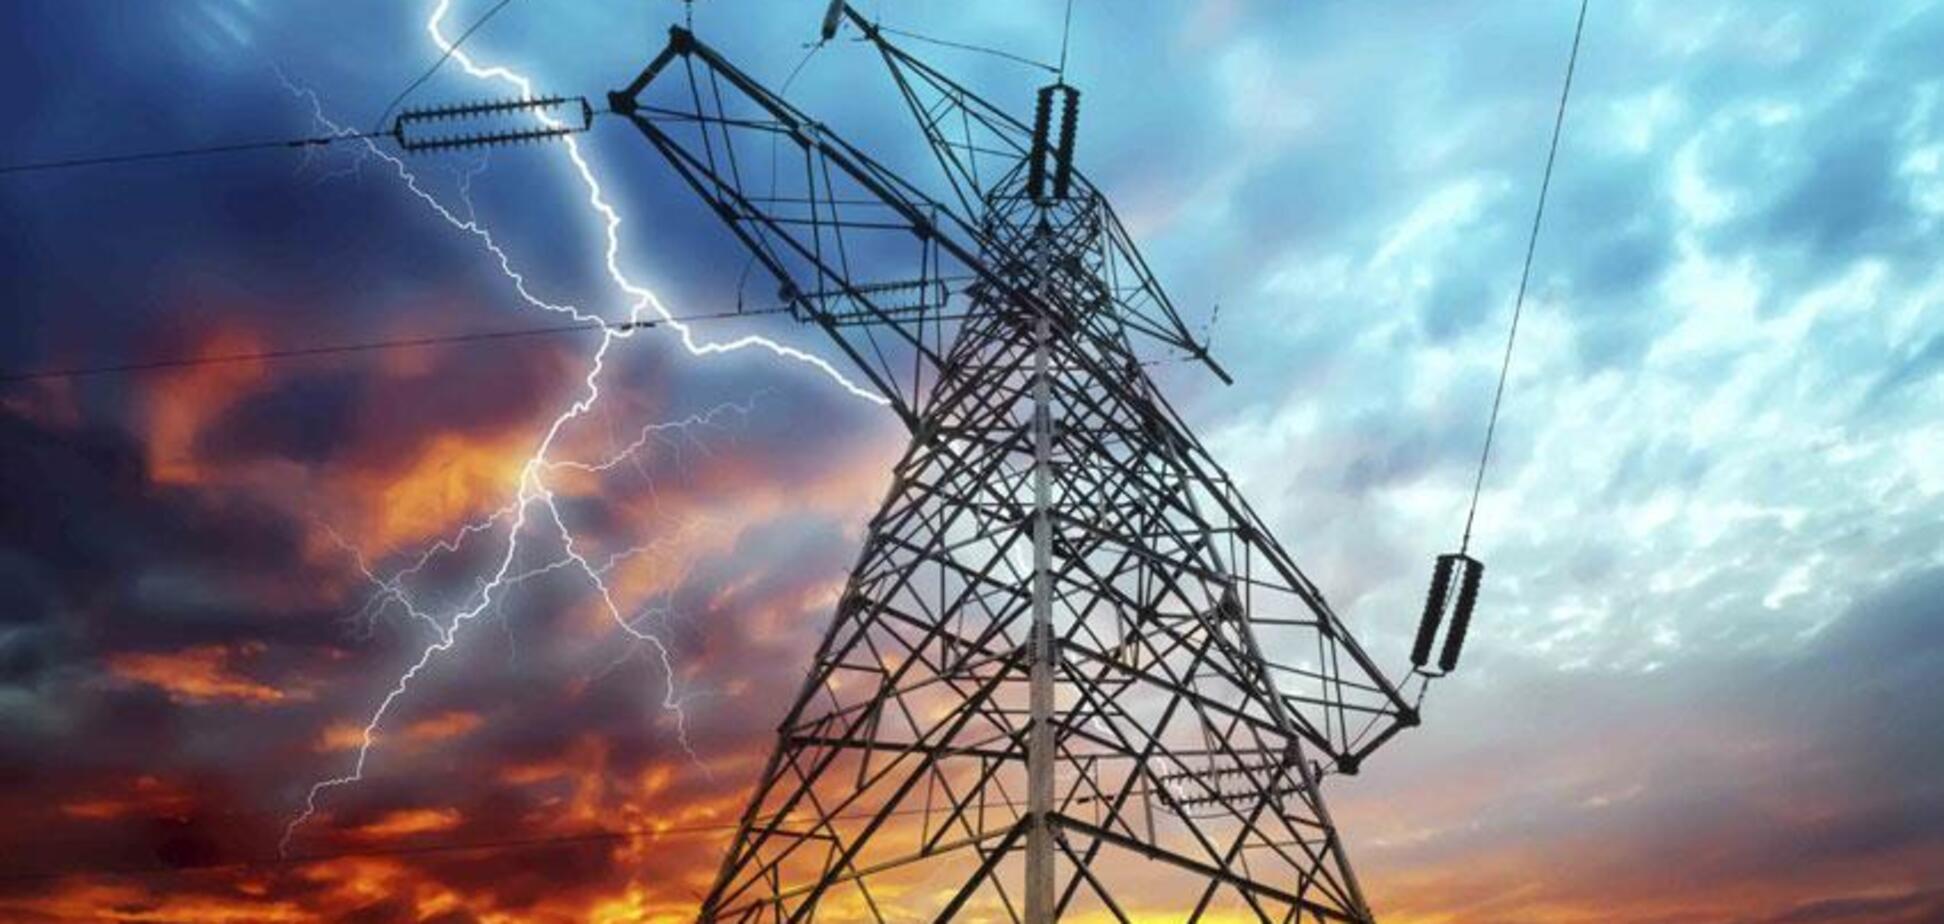 Законопроект о временных администрациях в энергокомпаниях несет серьезные риски – эксперт